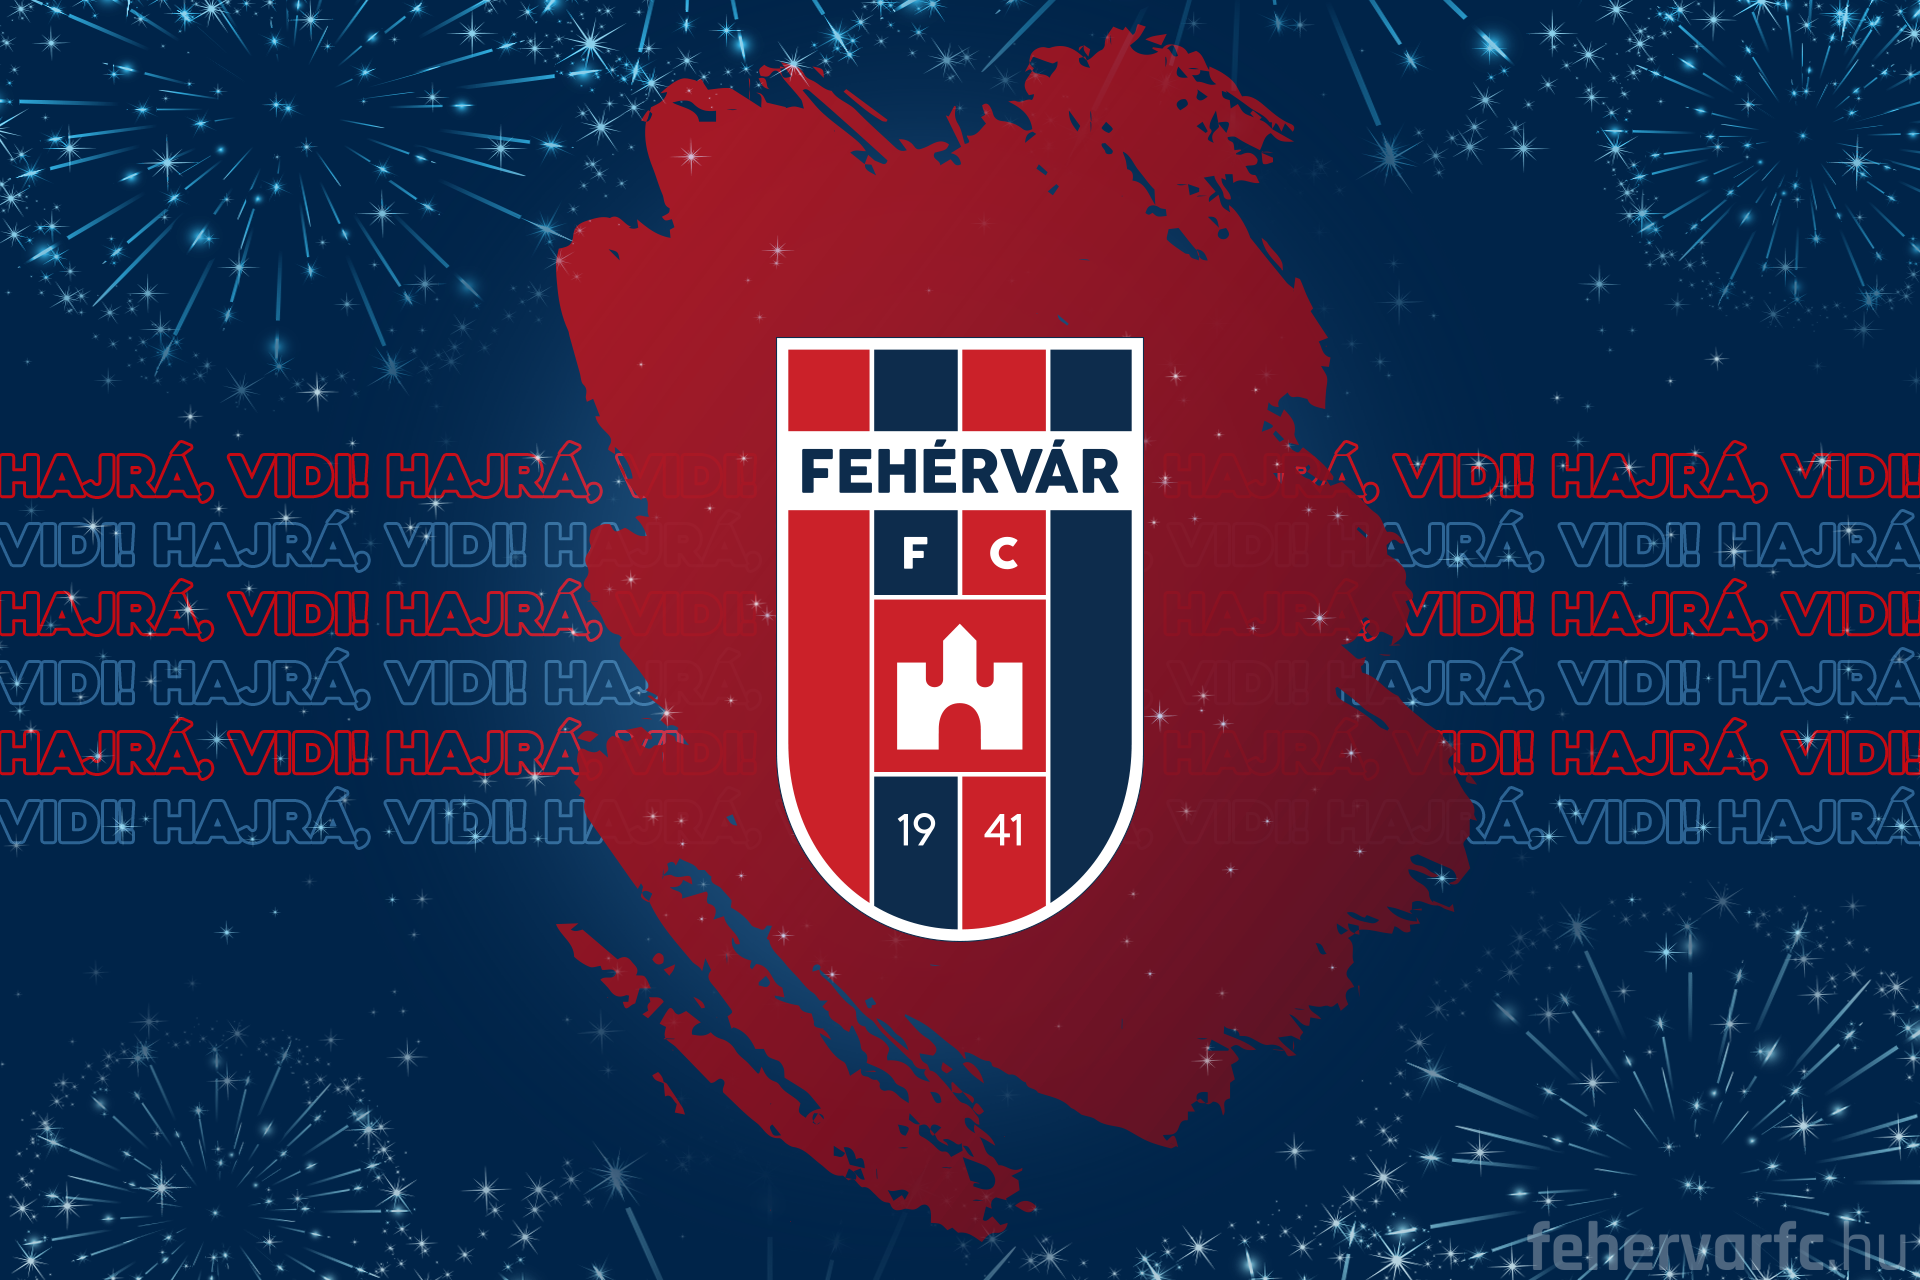 19-25 février.  |  Fehérvar FC